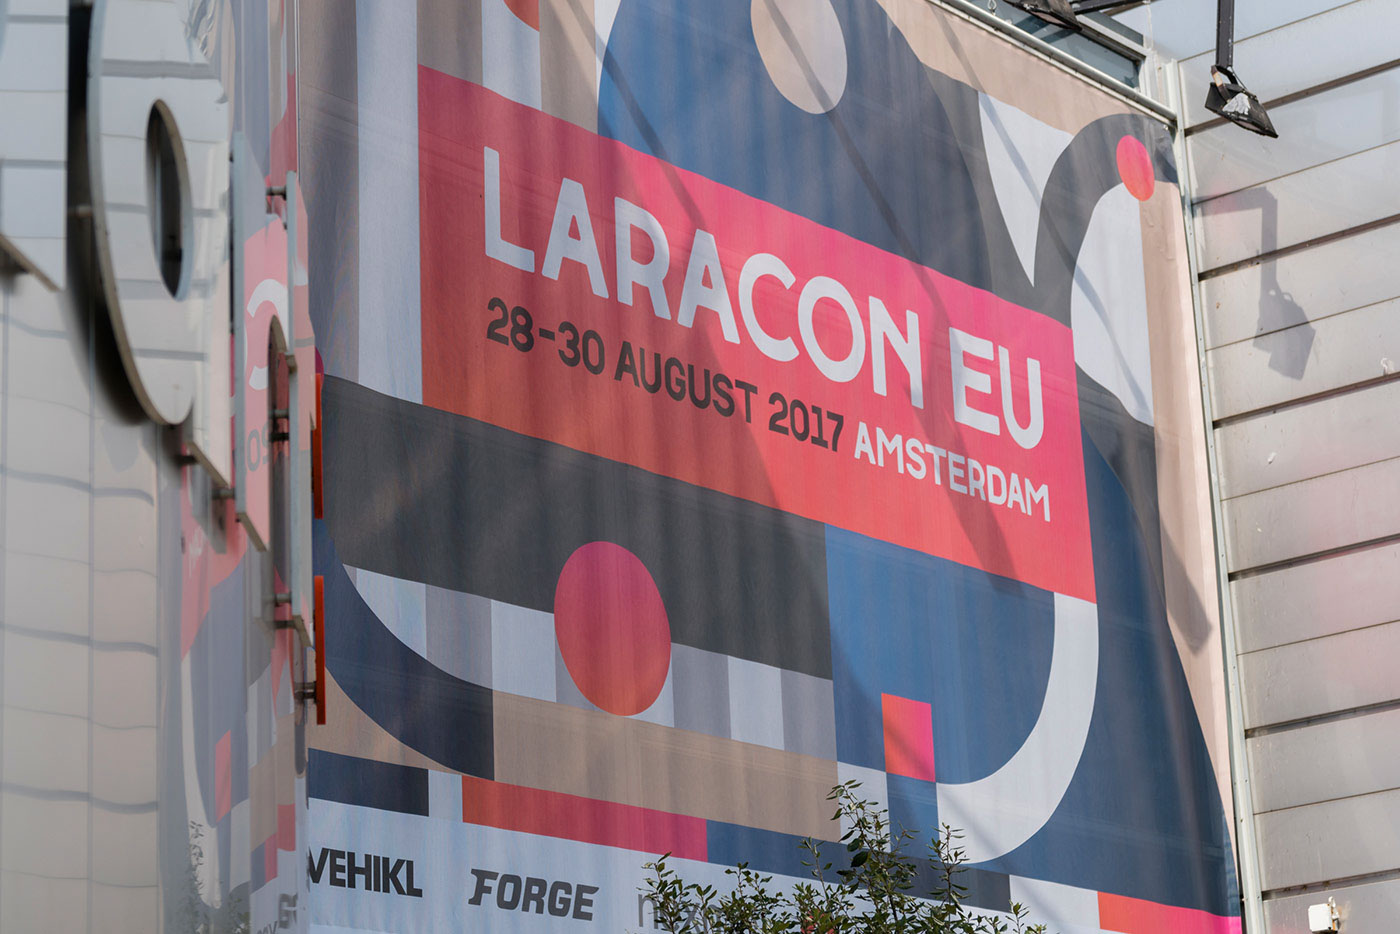 Laracon EU 2017-05